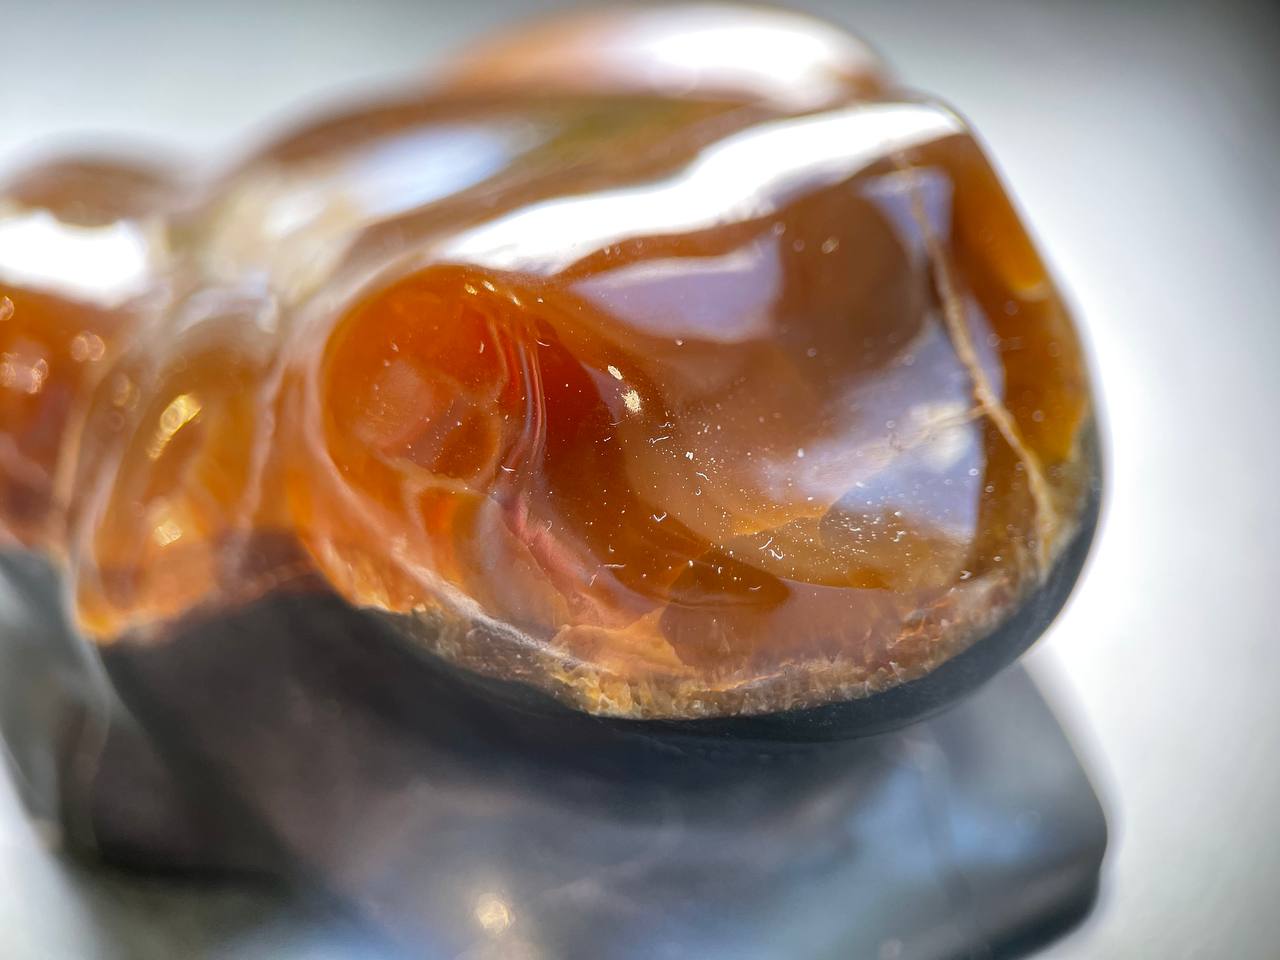 Лягушка из симберцита, 7,5х6,0х4,0 см FG-0213, фото 1